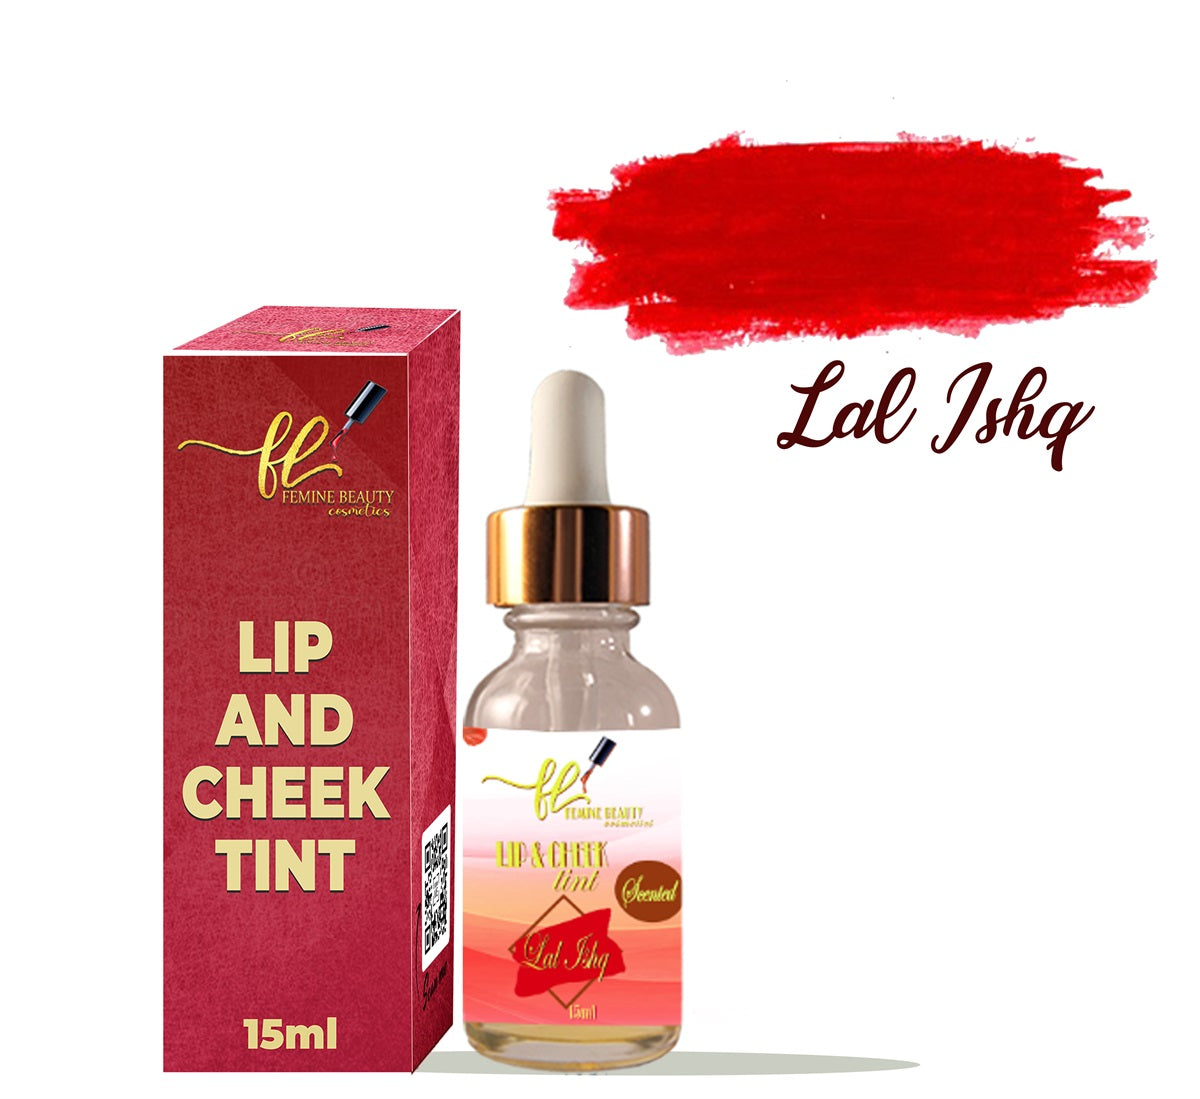 Femine lip and cheek tint (Lal ishq)